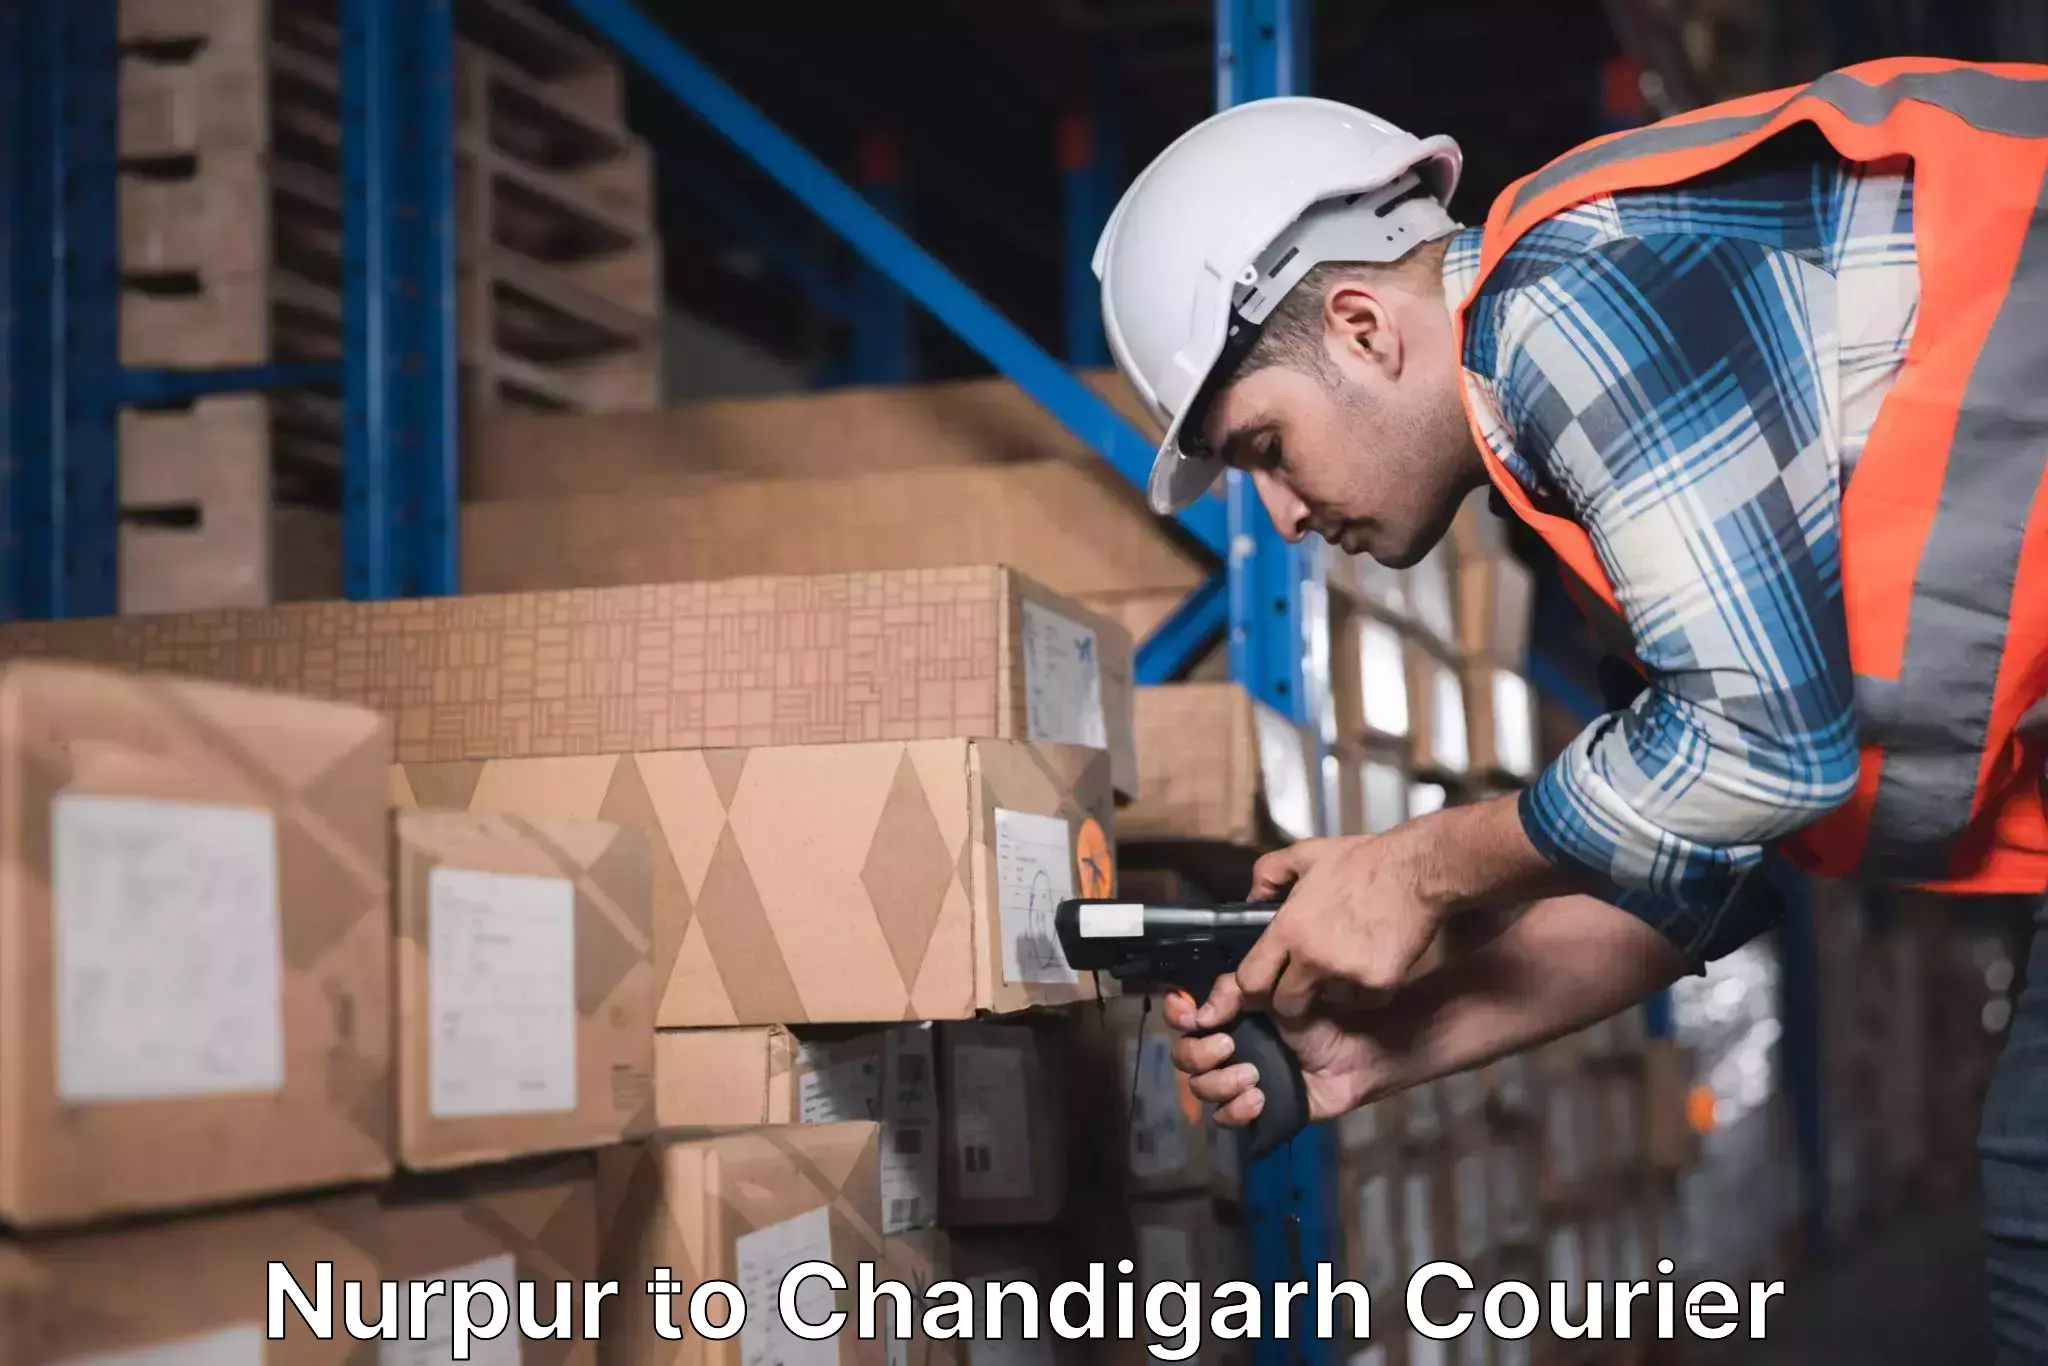 Premium courier services Nurpur to Chandigarh